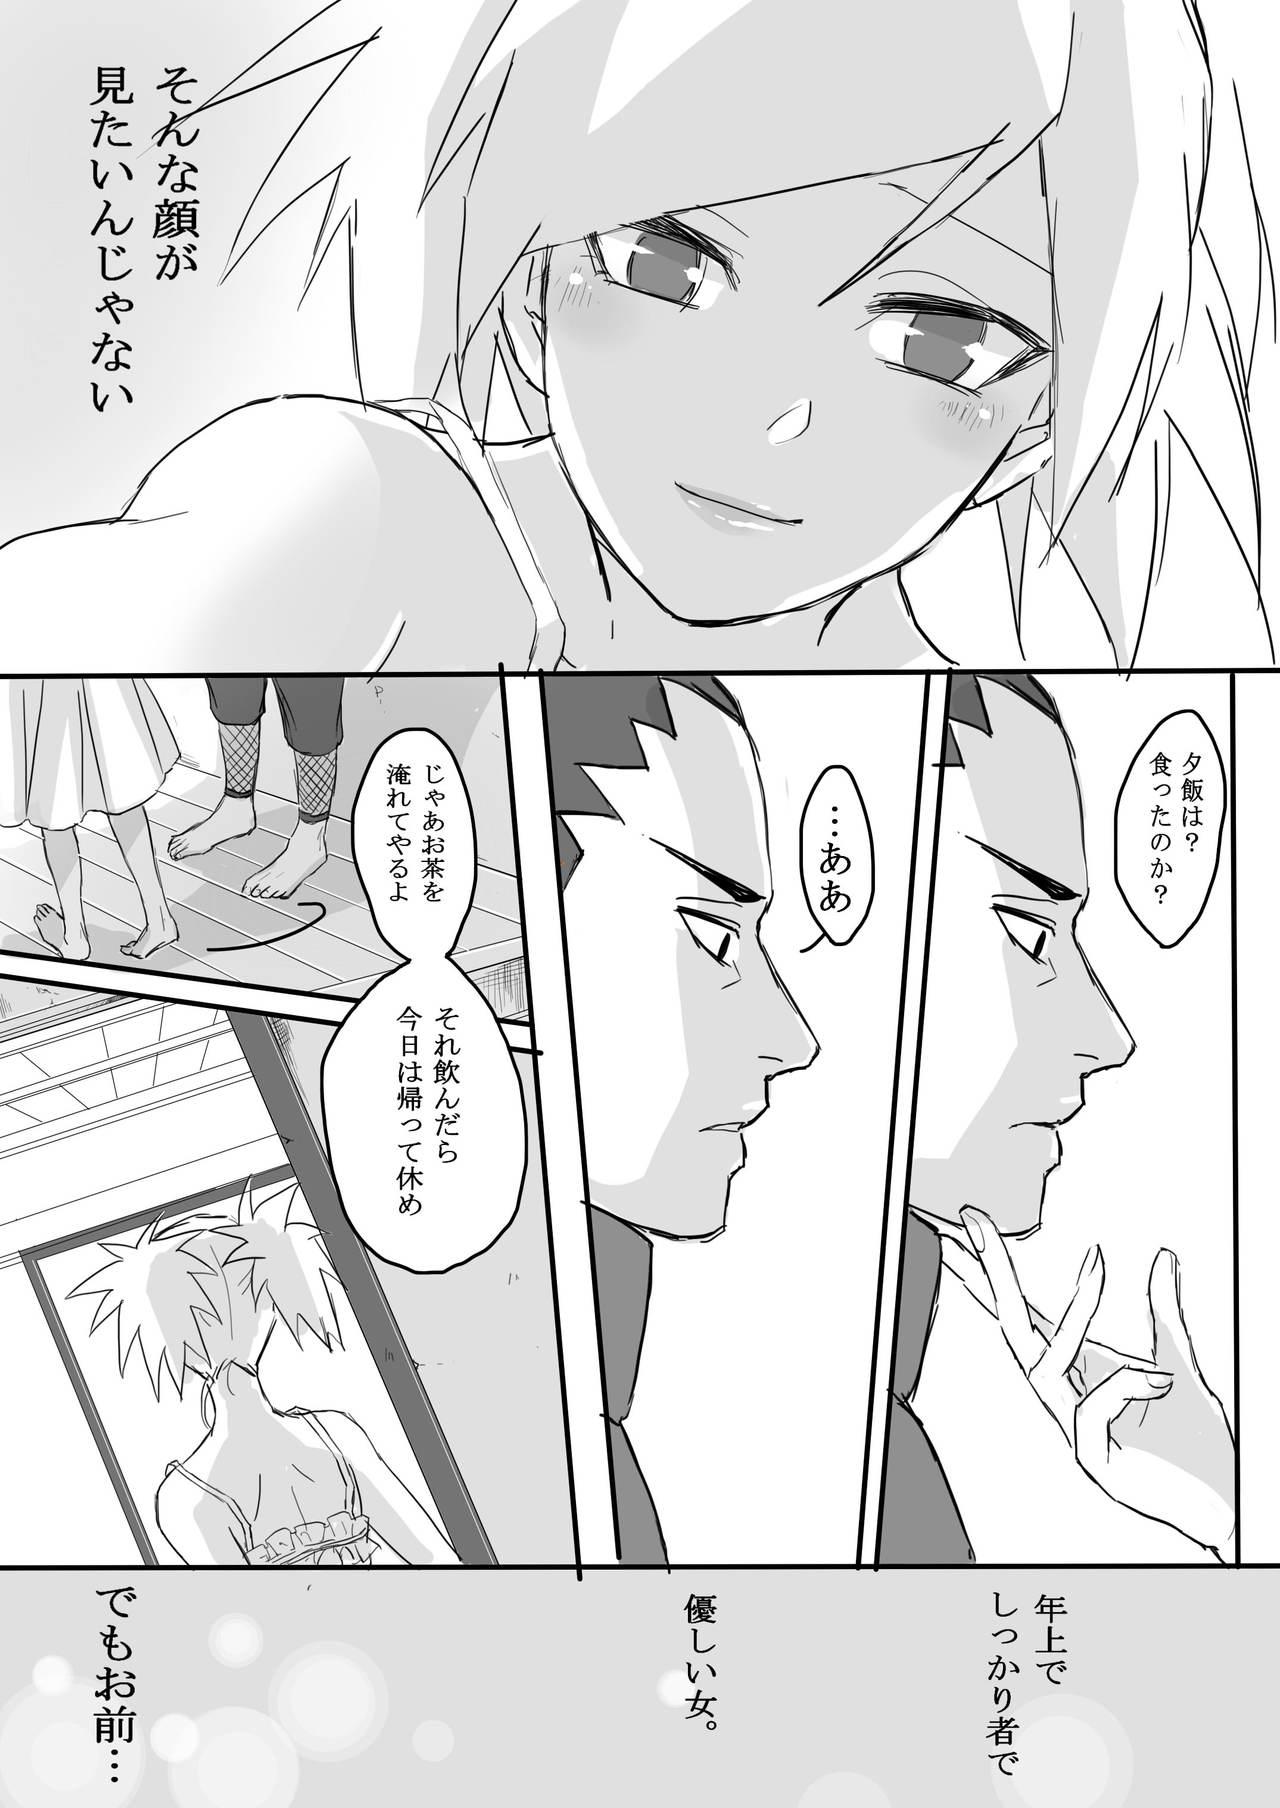 Blowjob Temari's birthday memorial! - ShikaTema R18 doujinshi - Naruto Hard Sex - Page 11